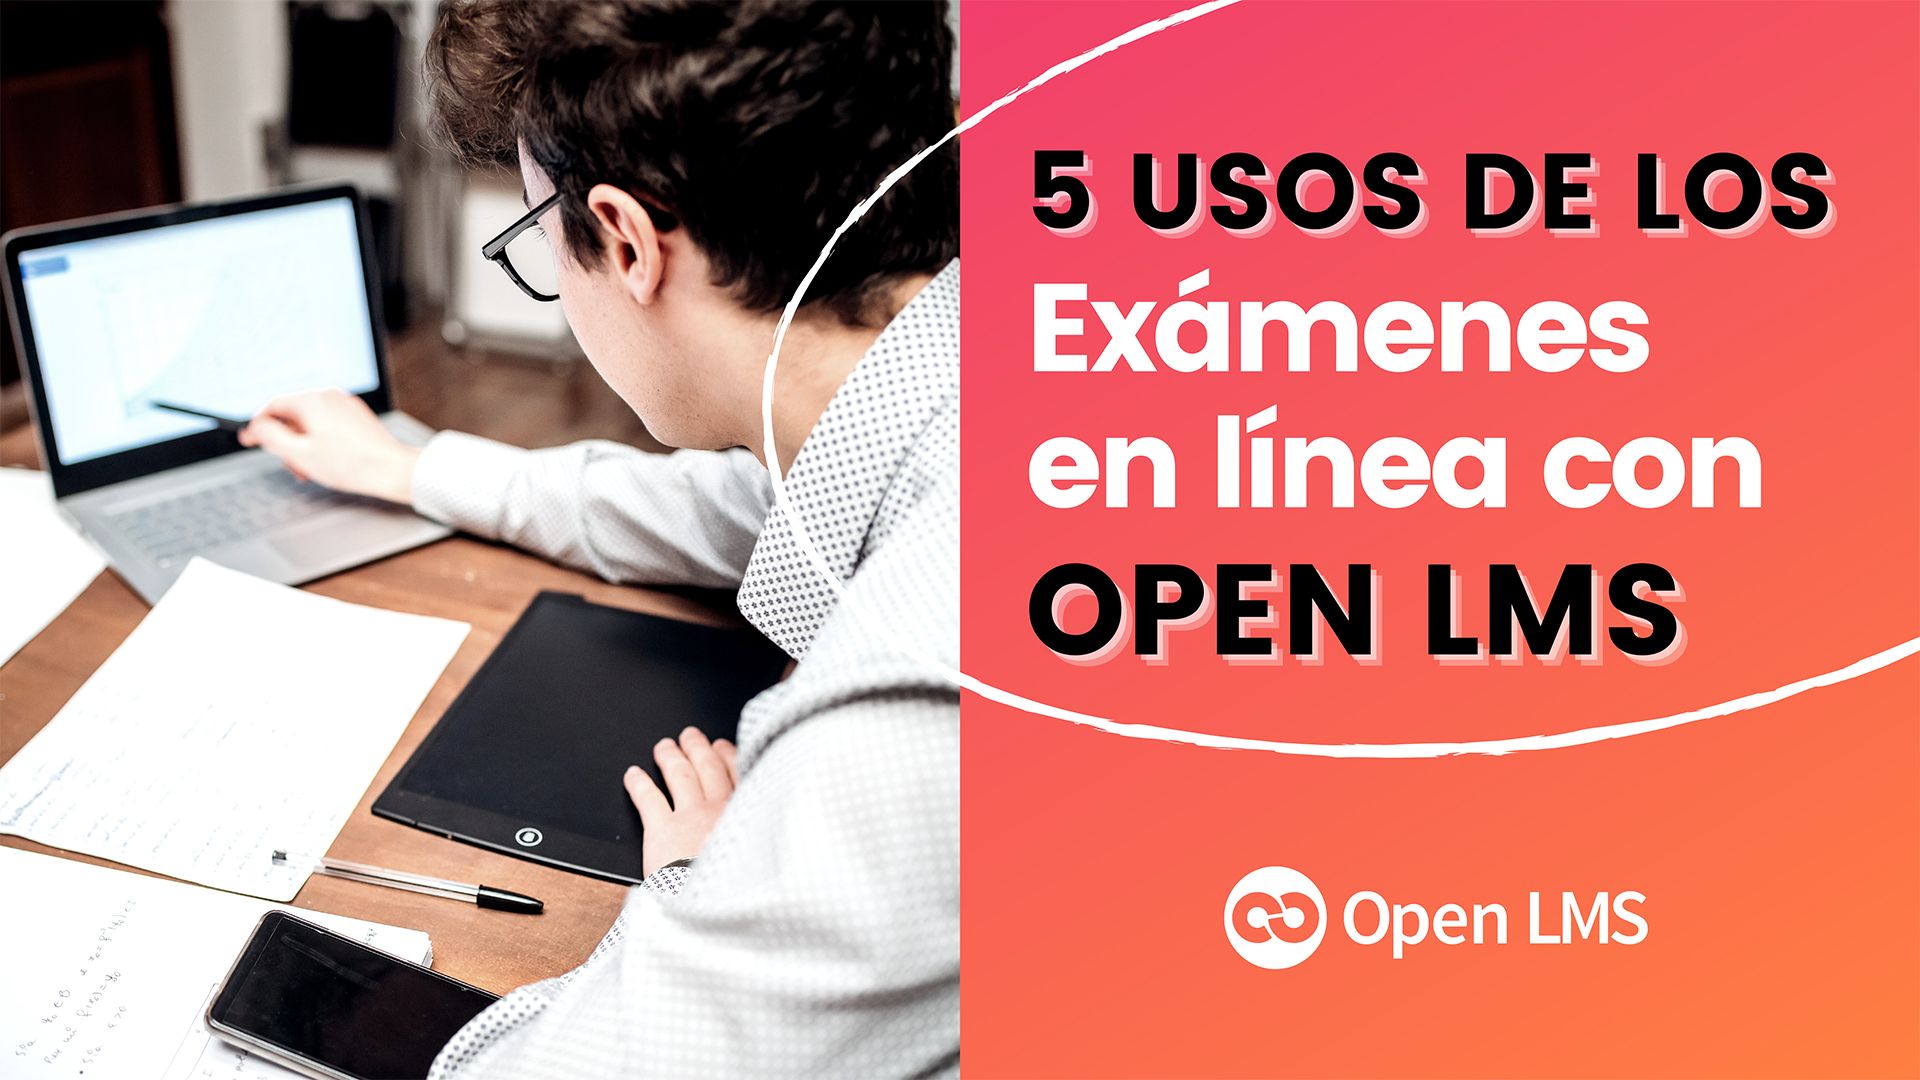 5 usos de los exámenes en línea de Open LMS que beneficiarán a su institución